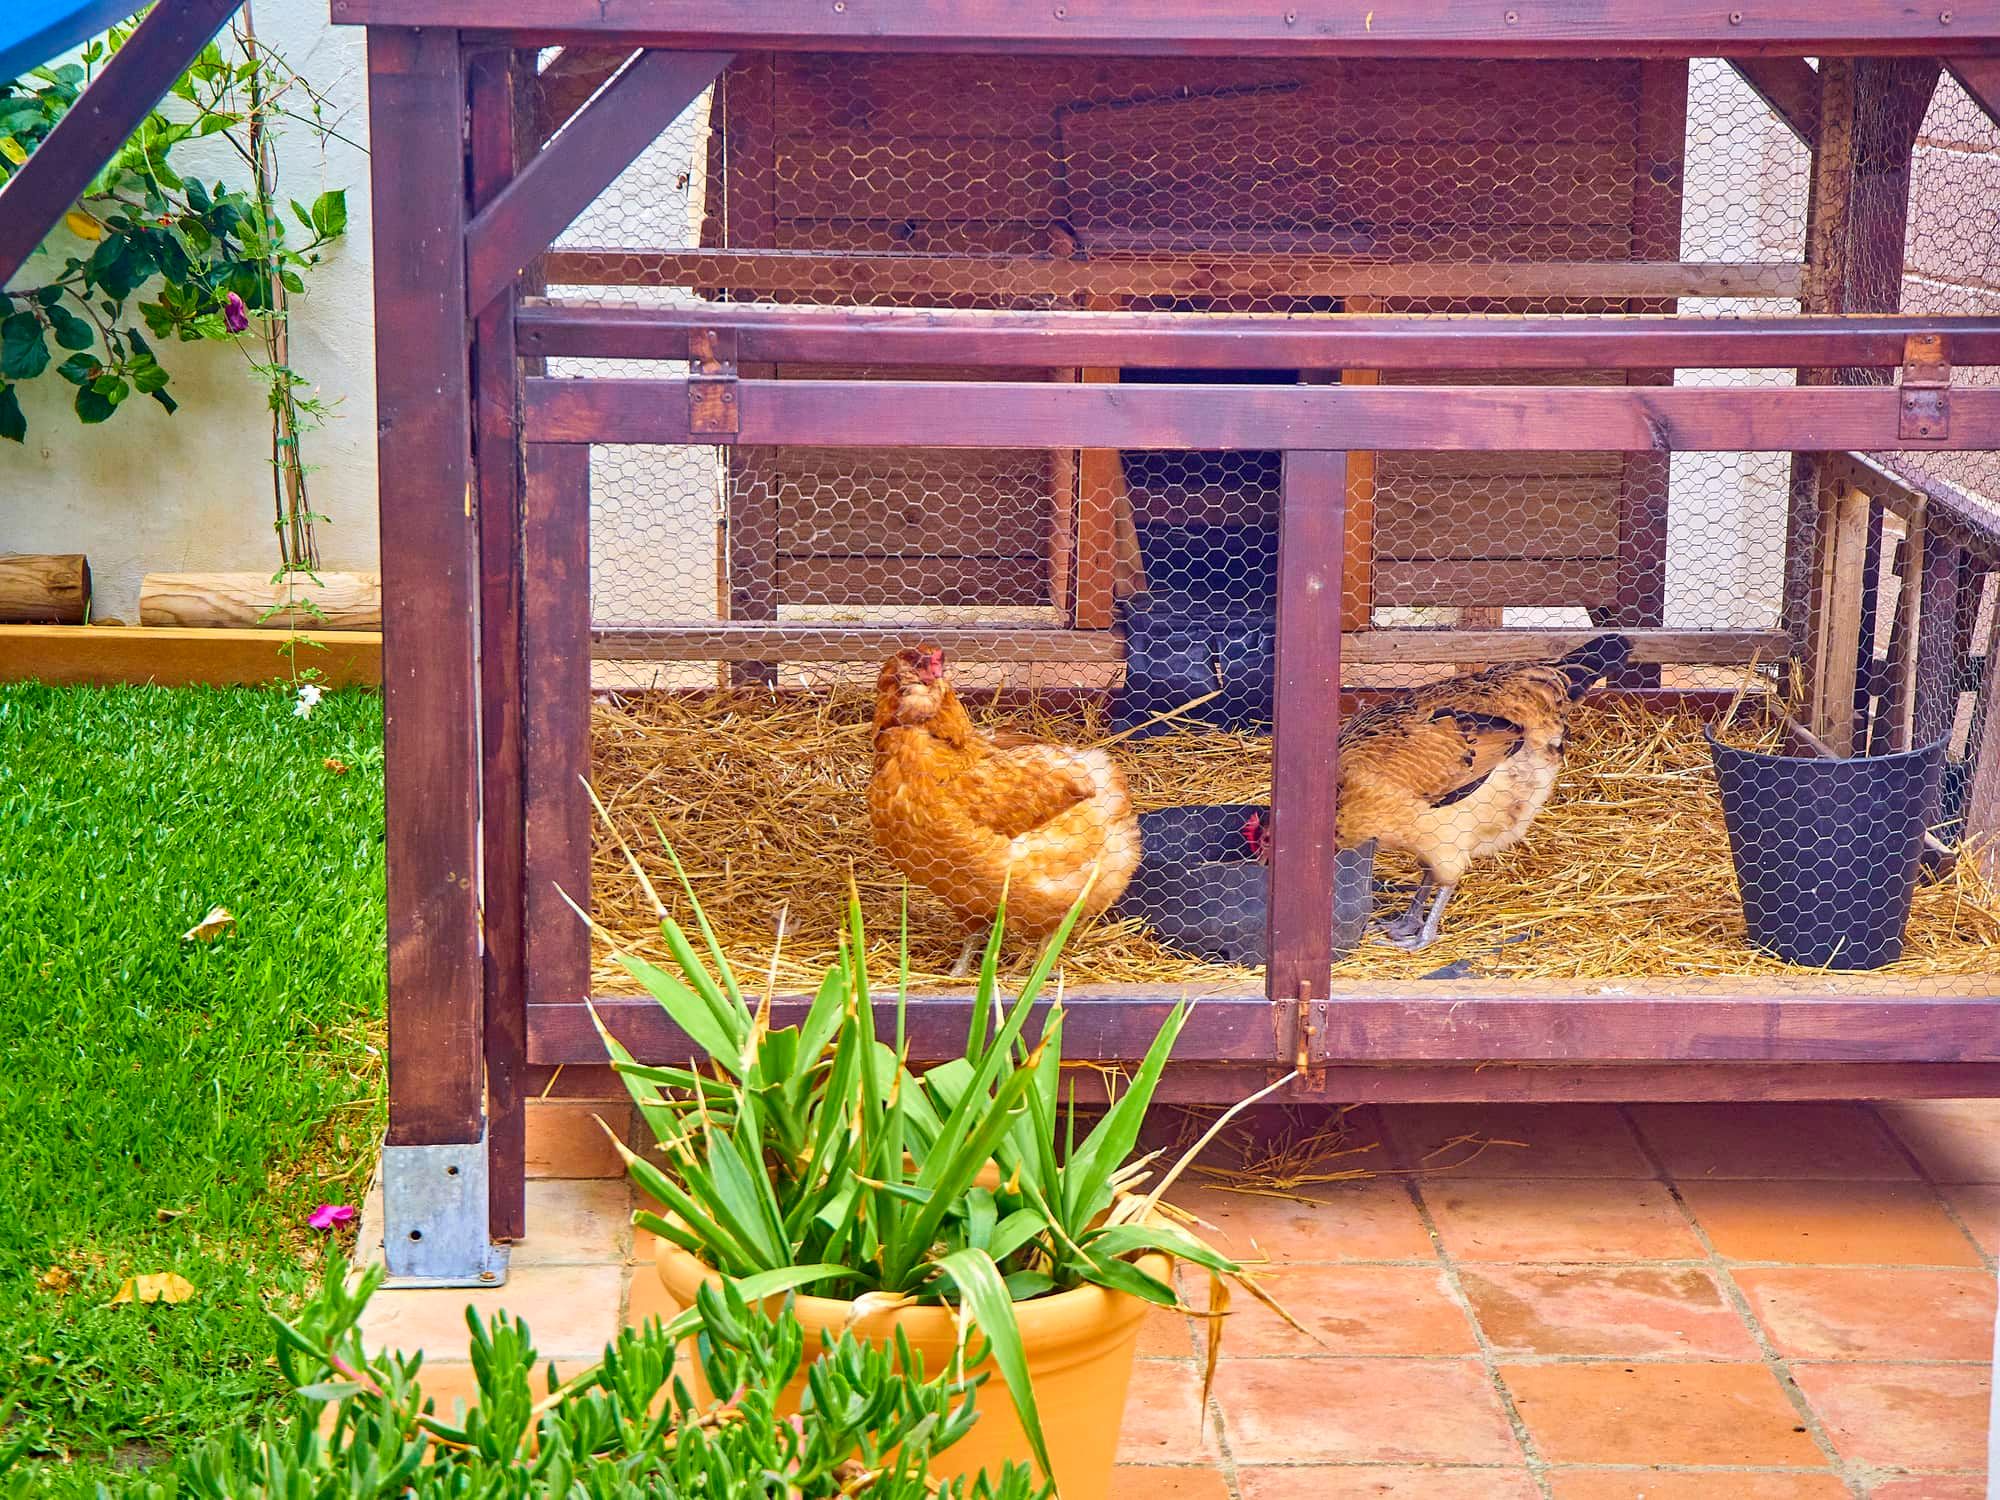 Hens eating grain in his chicken coop